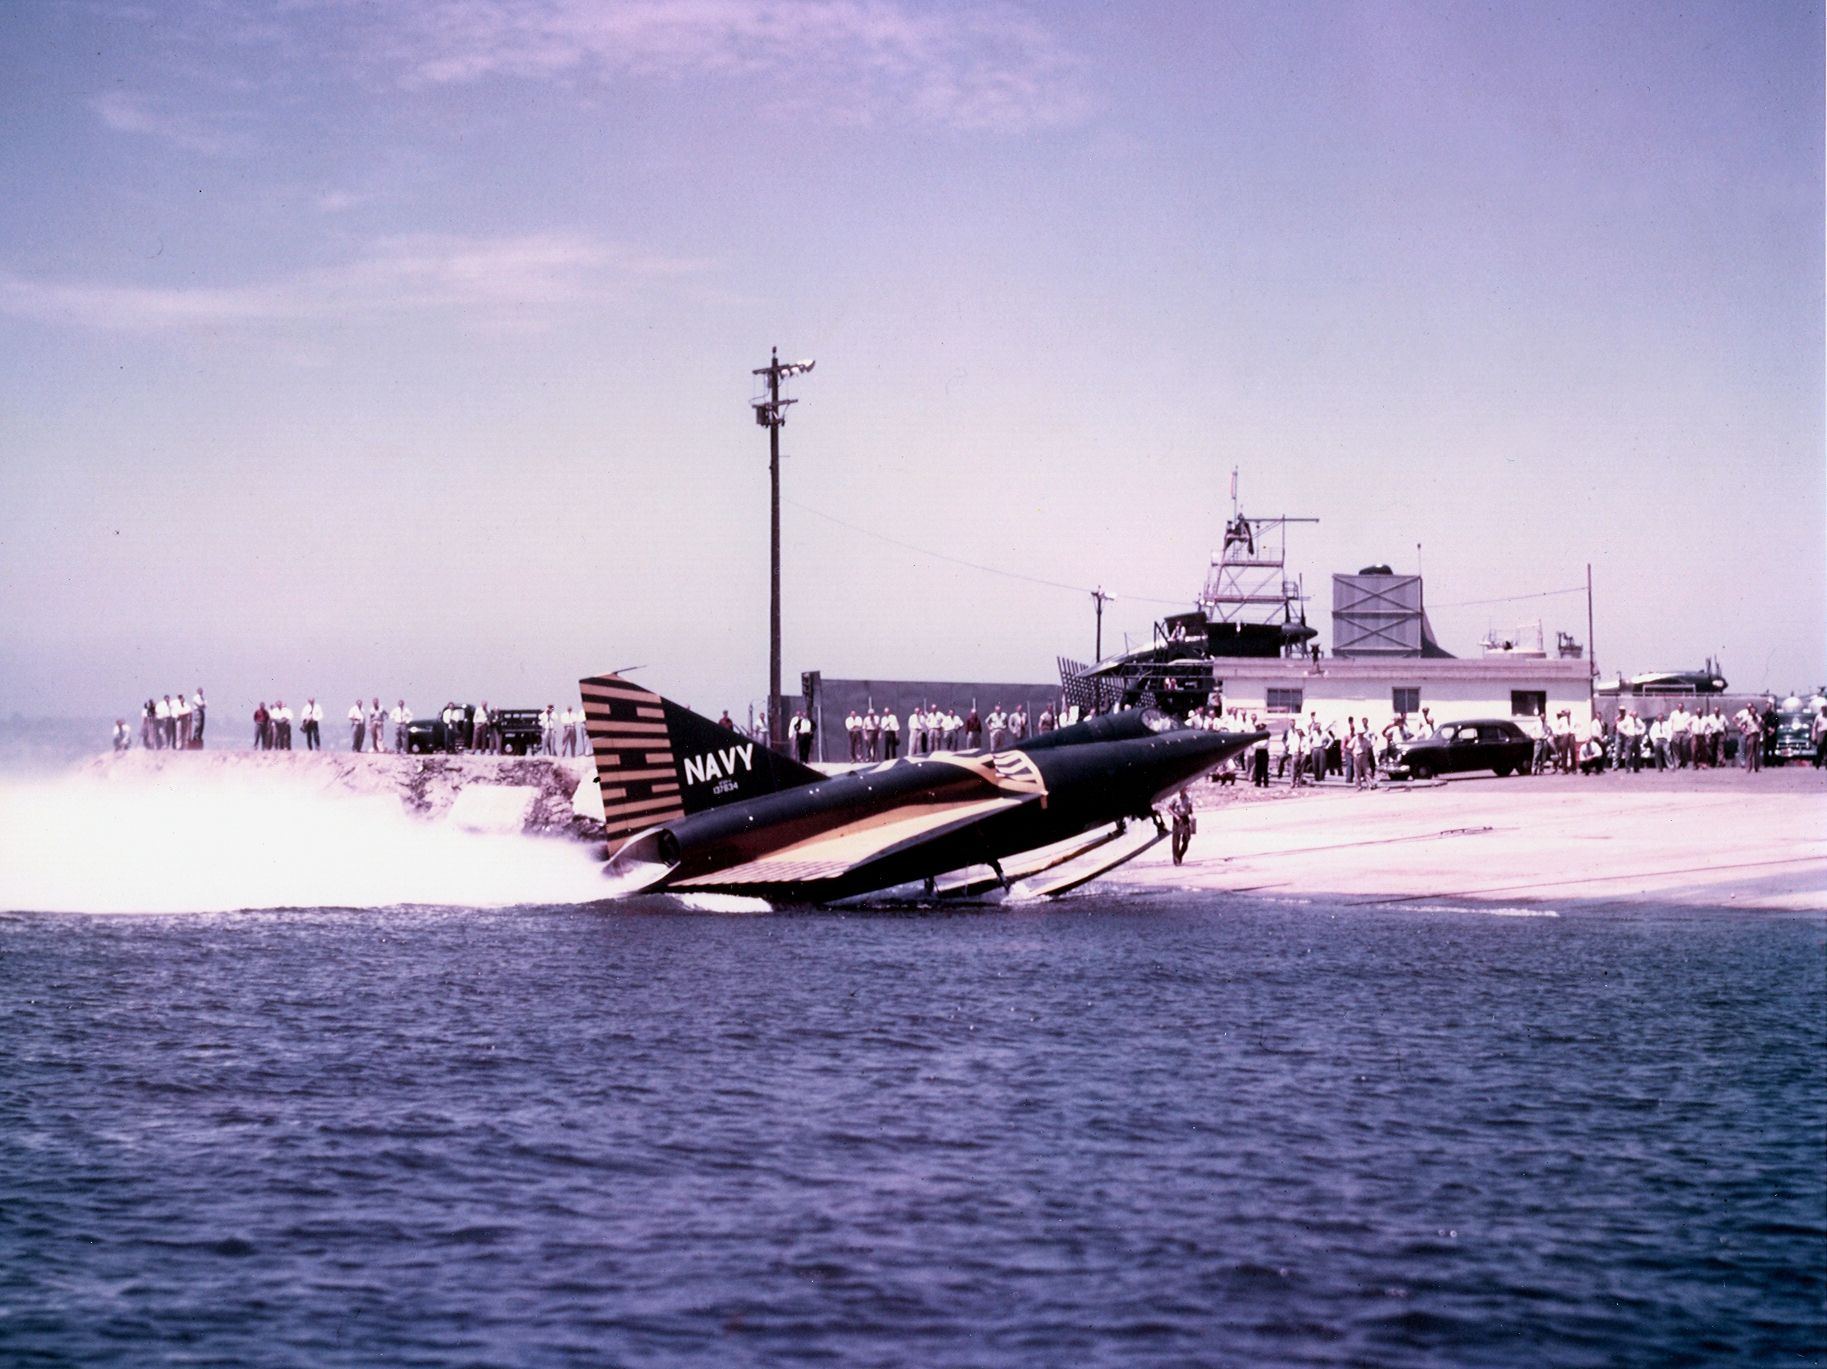 A Convair F2Y Sea Dart landing on shore.